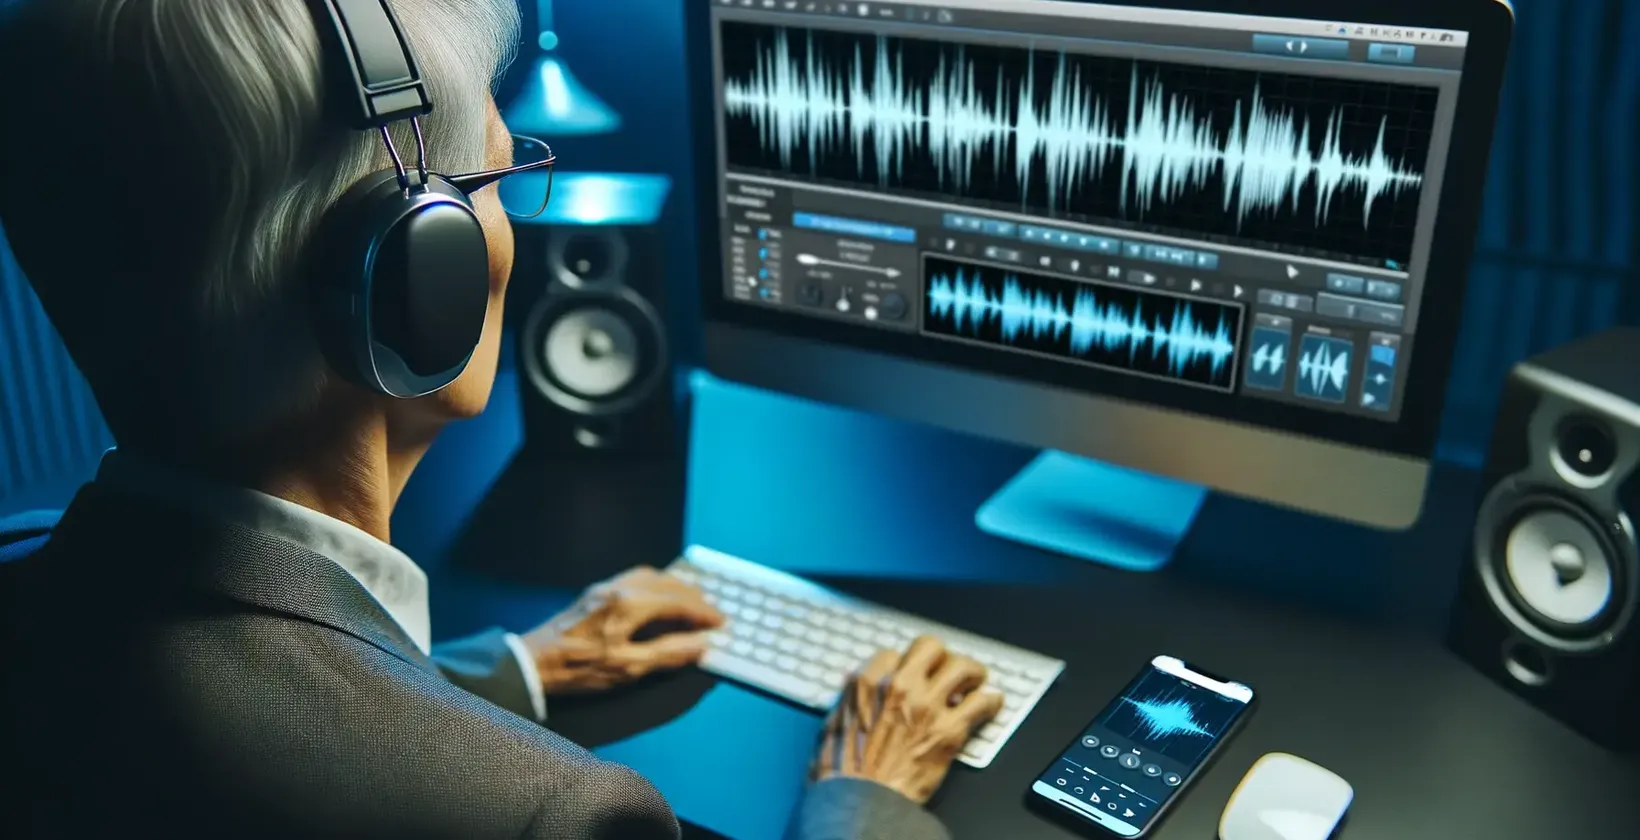 Scéna převodu zvuku na text pro nedoslýchavé ukazuje stříbrovlasého se sluchátky na uších, který pracuje u modře osvětleného stolu s brýlemi.